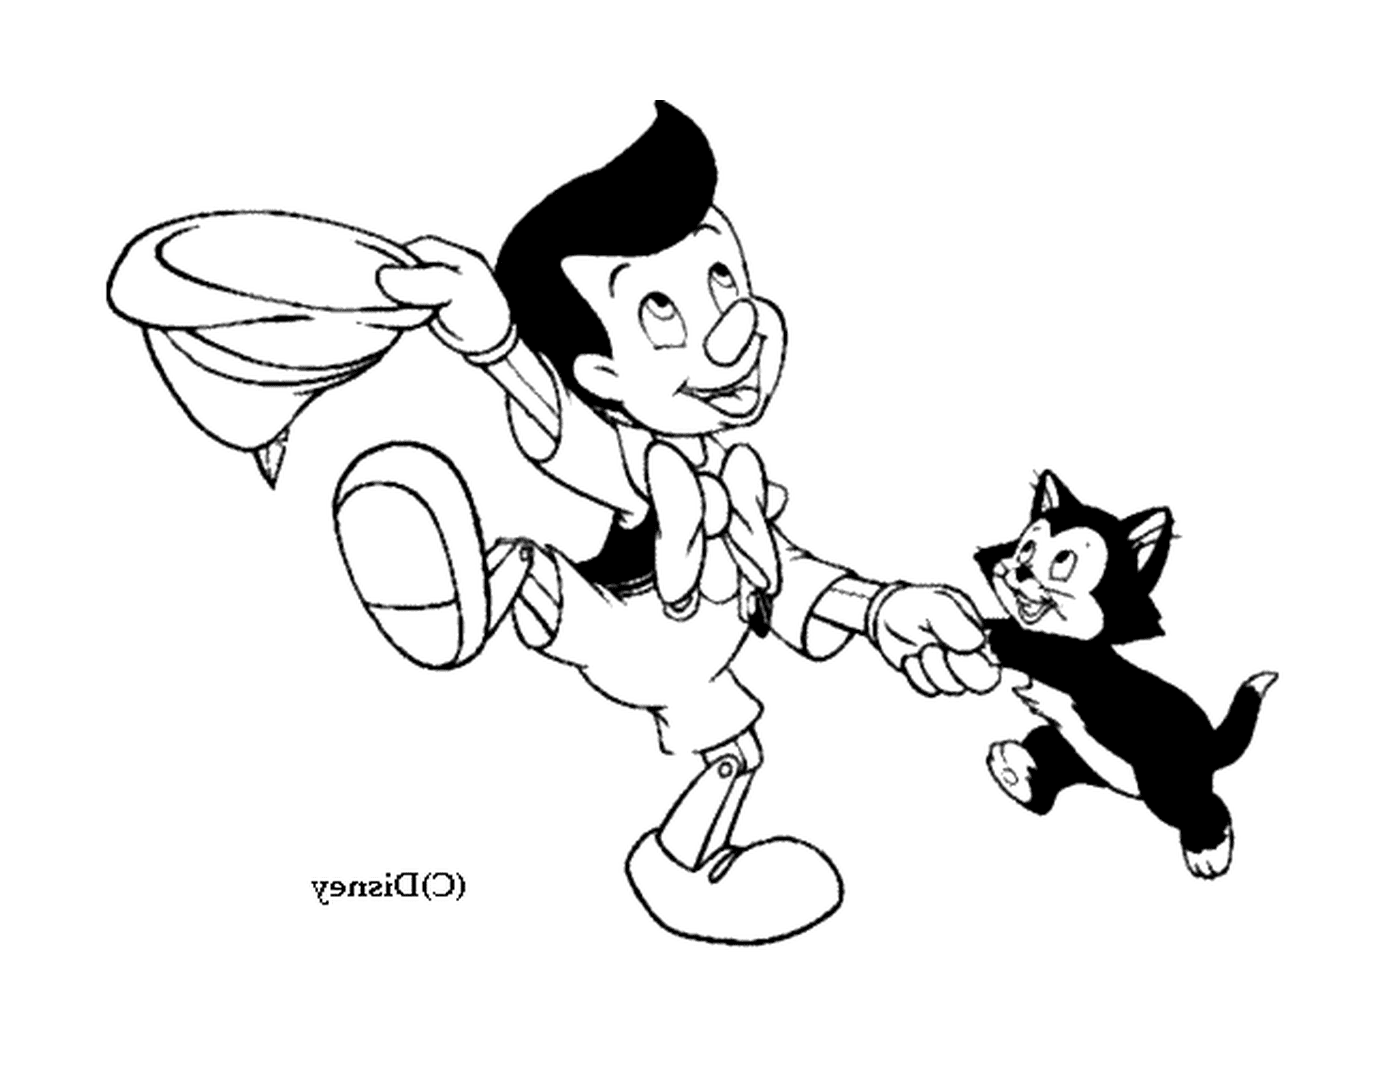  皮诺曹跟猫玩 